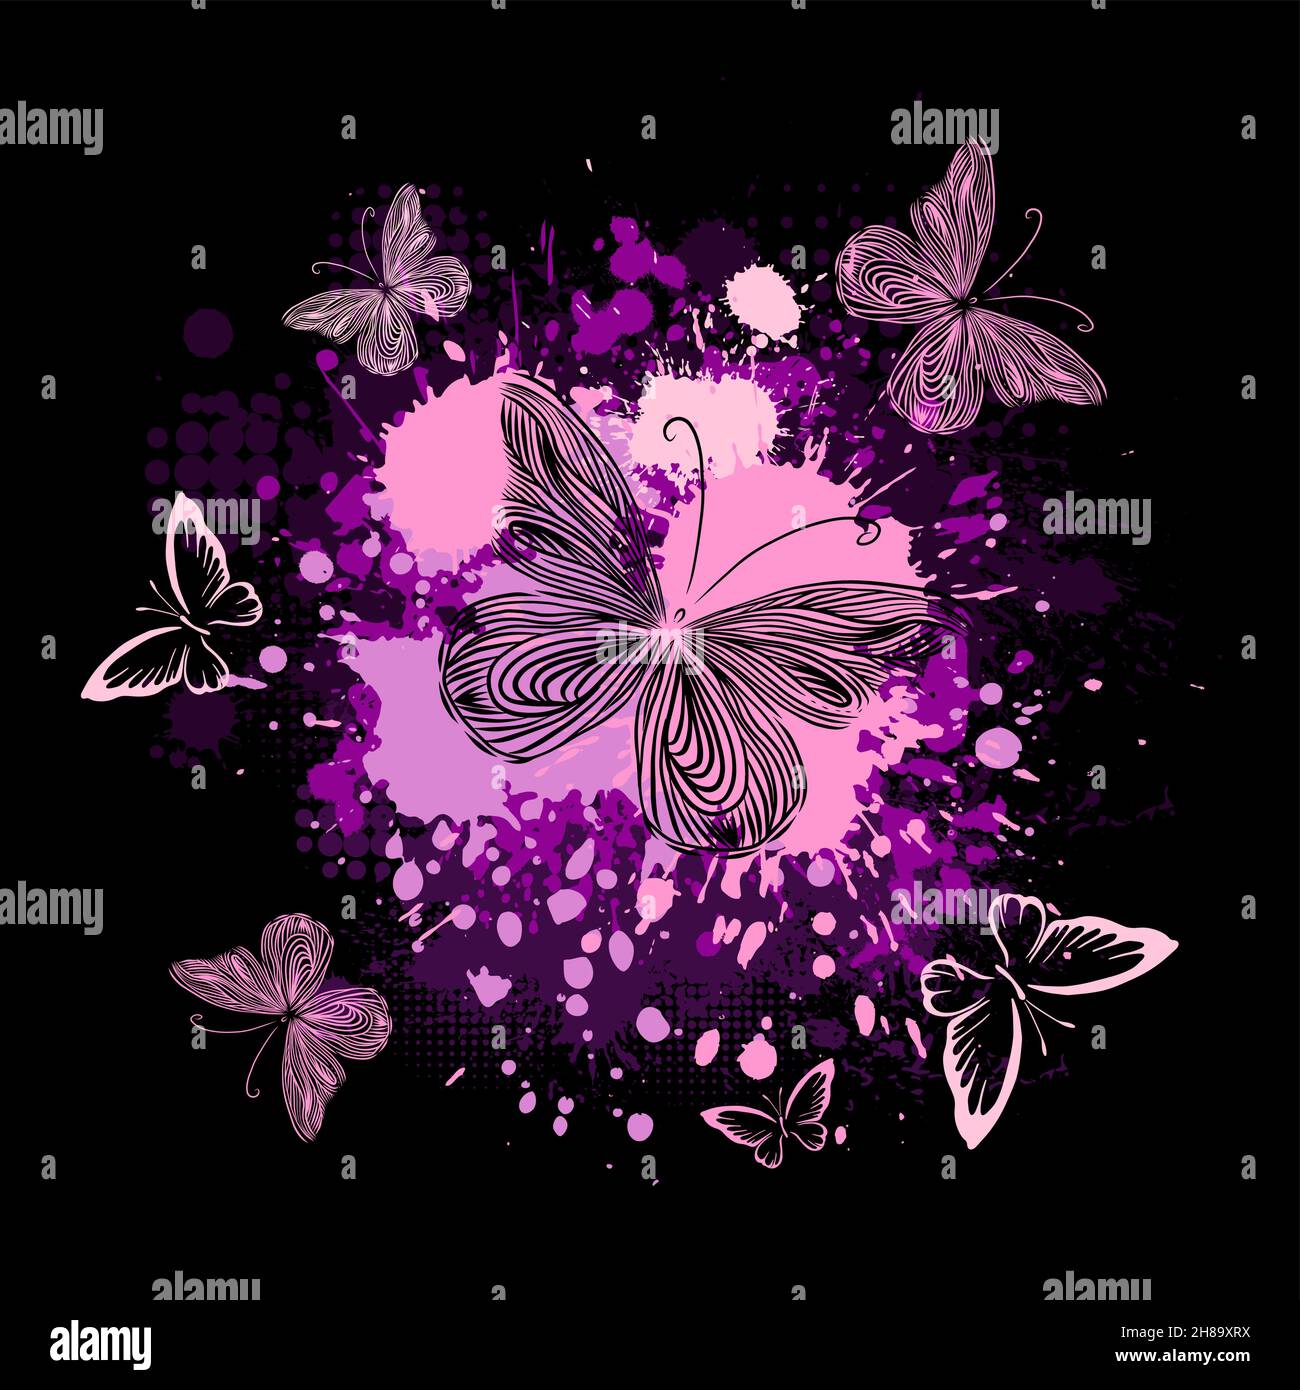 dark purple butterfly wallpaper